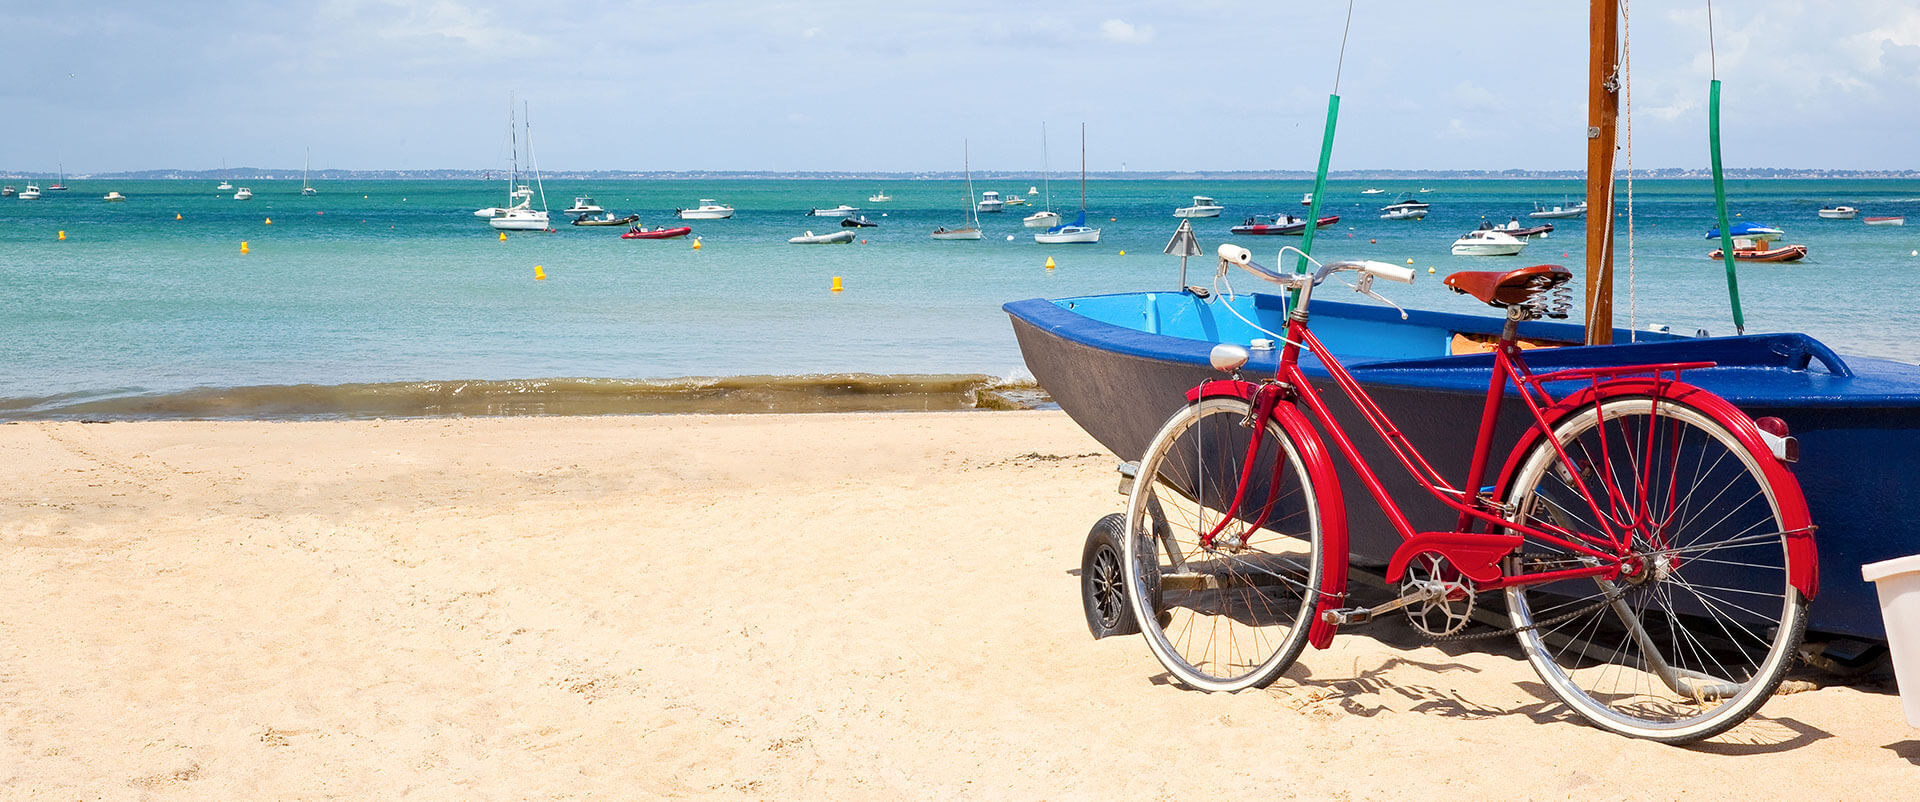 Bandeau vélo sur plage avec bateau caravelle